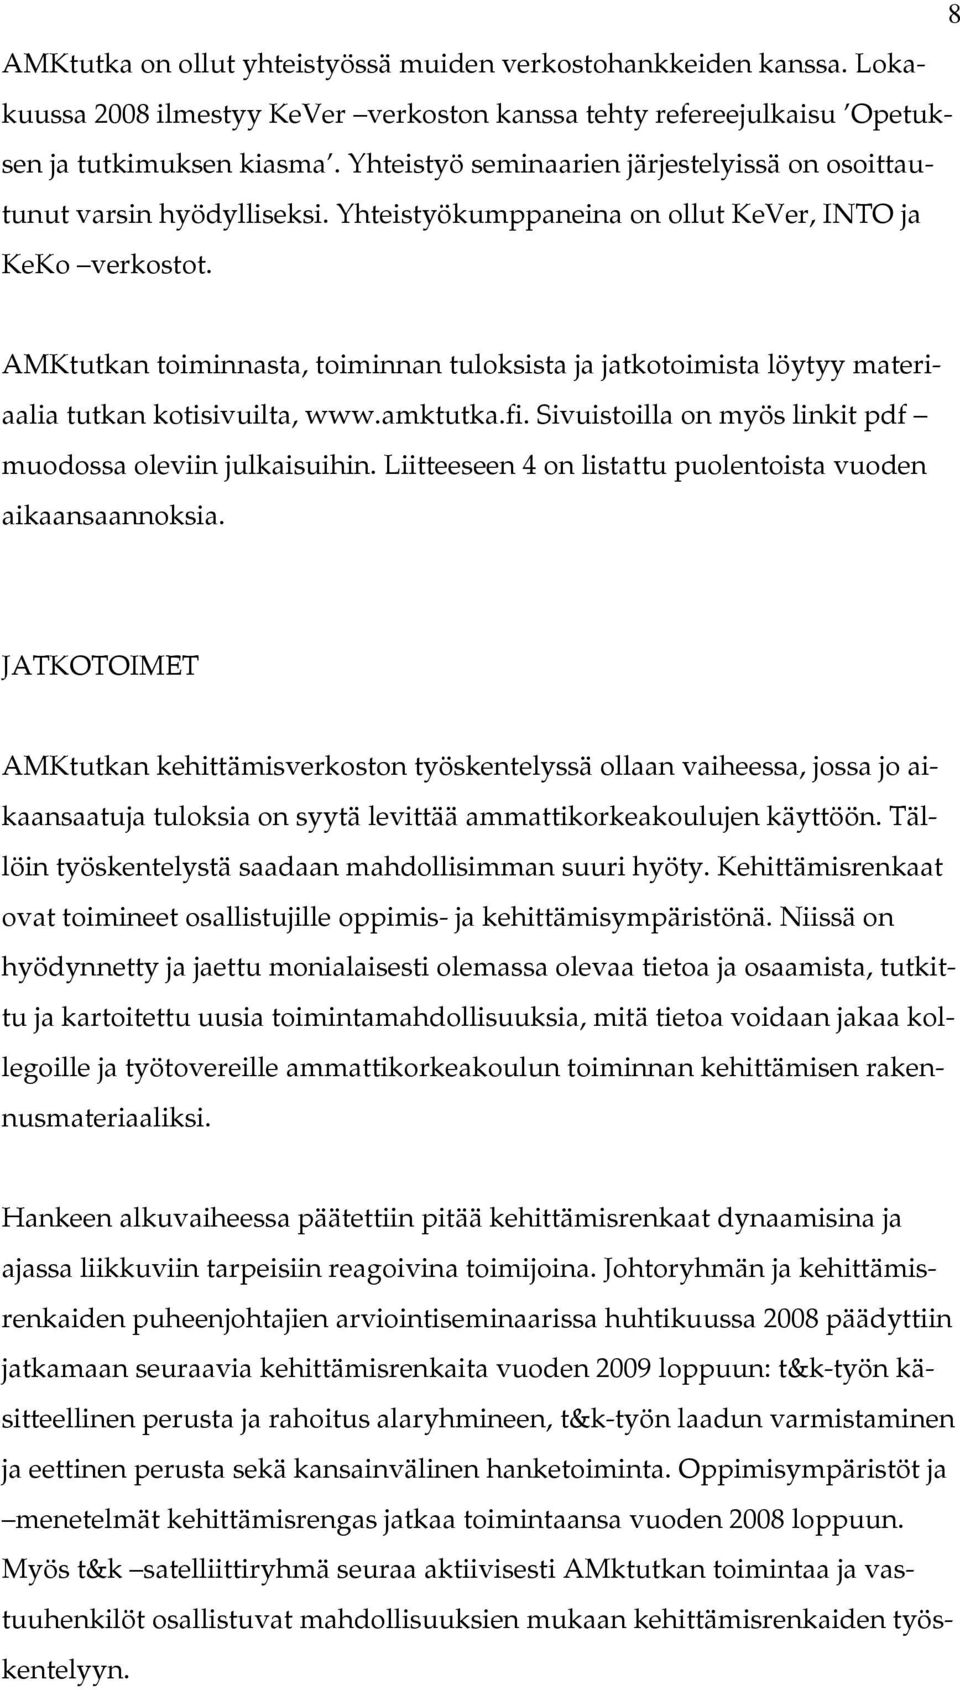 AMKtutkan toiminnasta, toiminnan tuloksista ja jatkotoimista löytyy materiaalia tutkan kotisivuilta, www.amktutka.fi. Sivuistoilla on myös linkit pdf muodossa oleviin julkaisuihin.